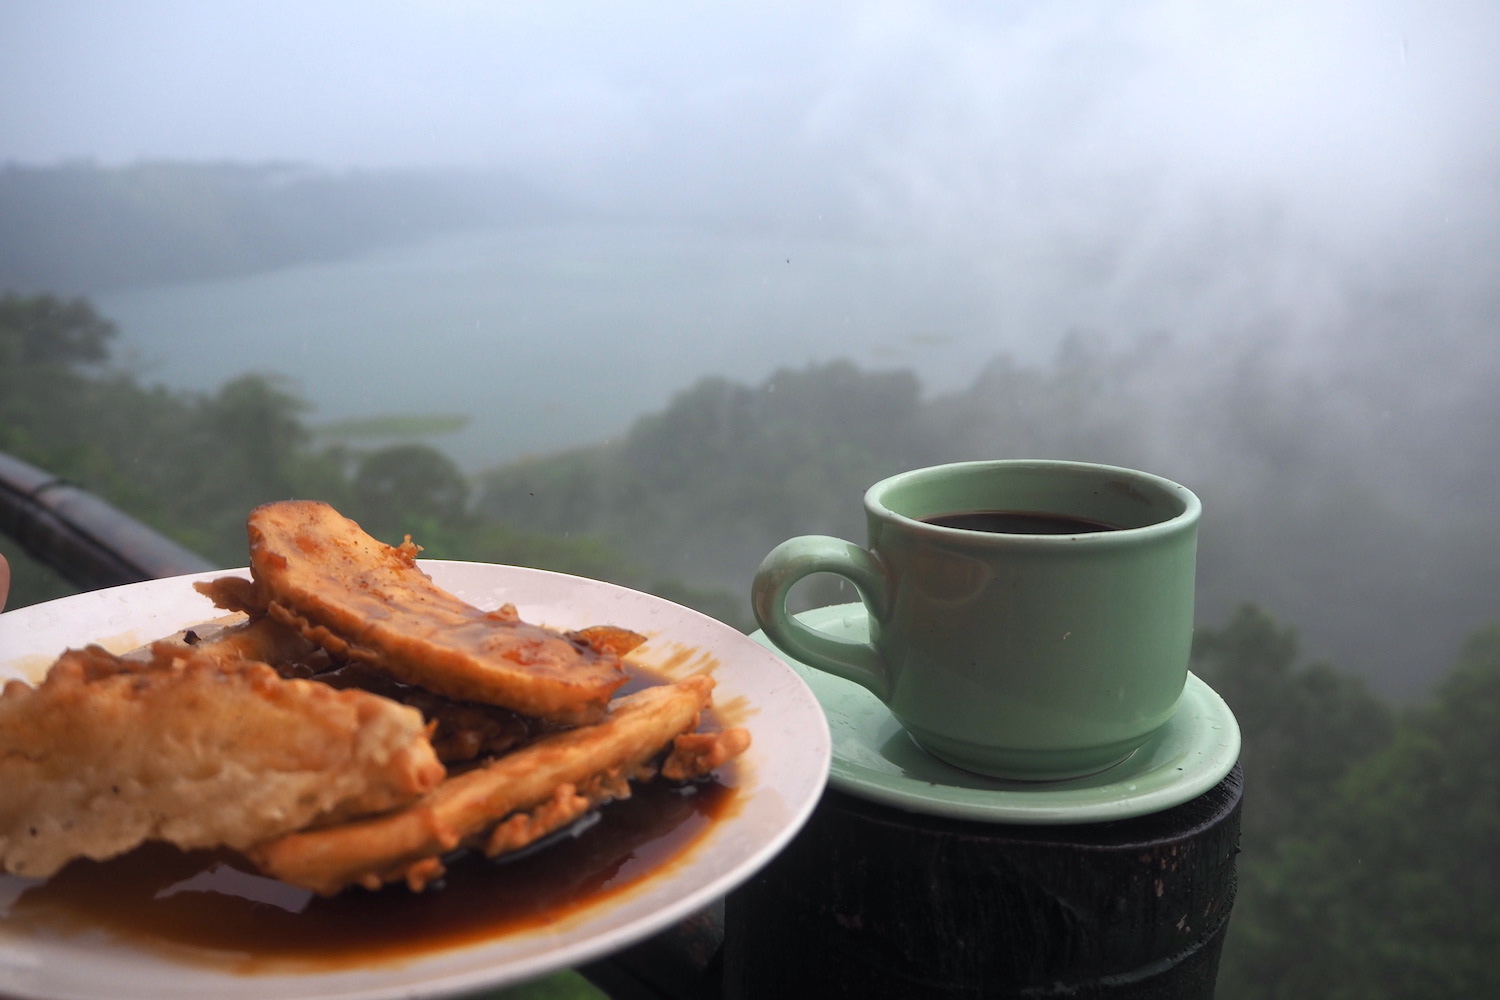 Secangkir kopi Robusta dari Buleleng dan pisang goreng menemani kabut saat memandangi panorama danau Buyan dan Tamblingan yang berdampingan dari kejauhan. Foto: Luh De Suriyani/Mongabay Indonesia